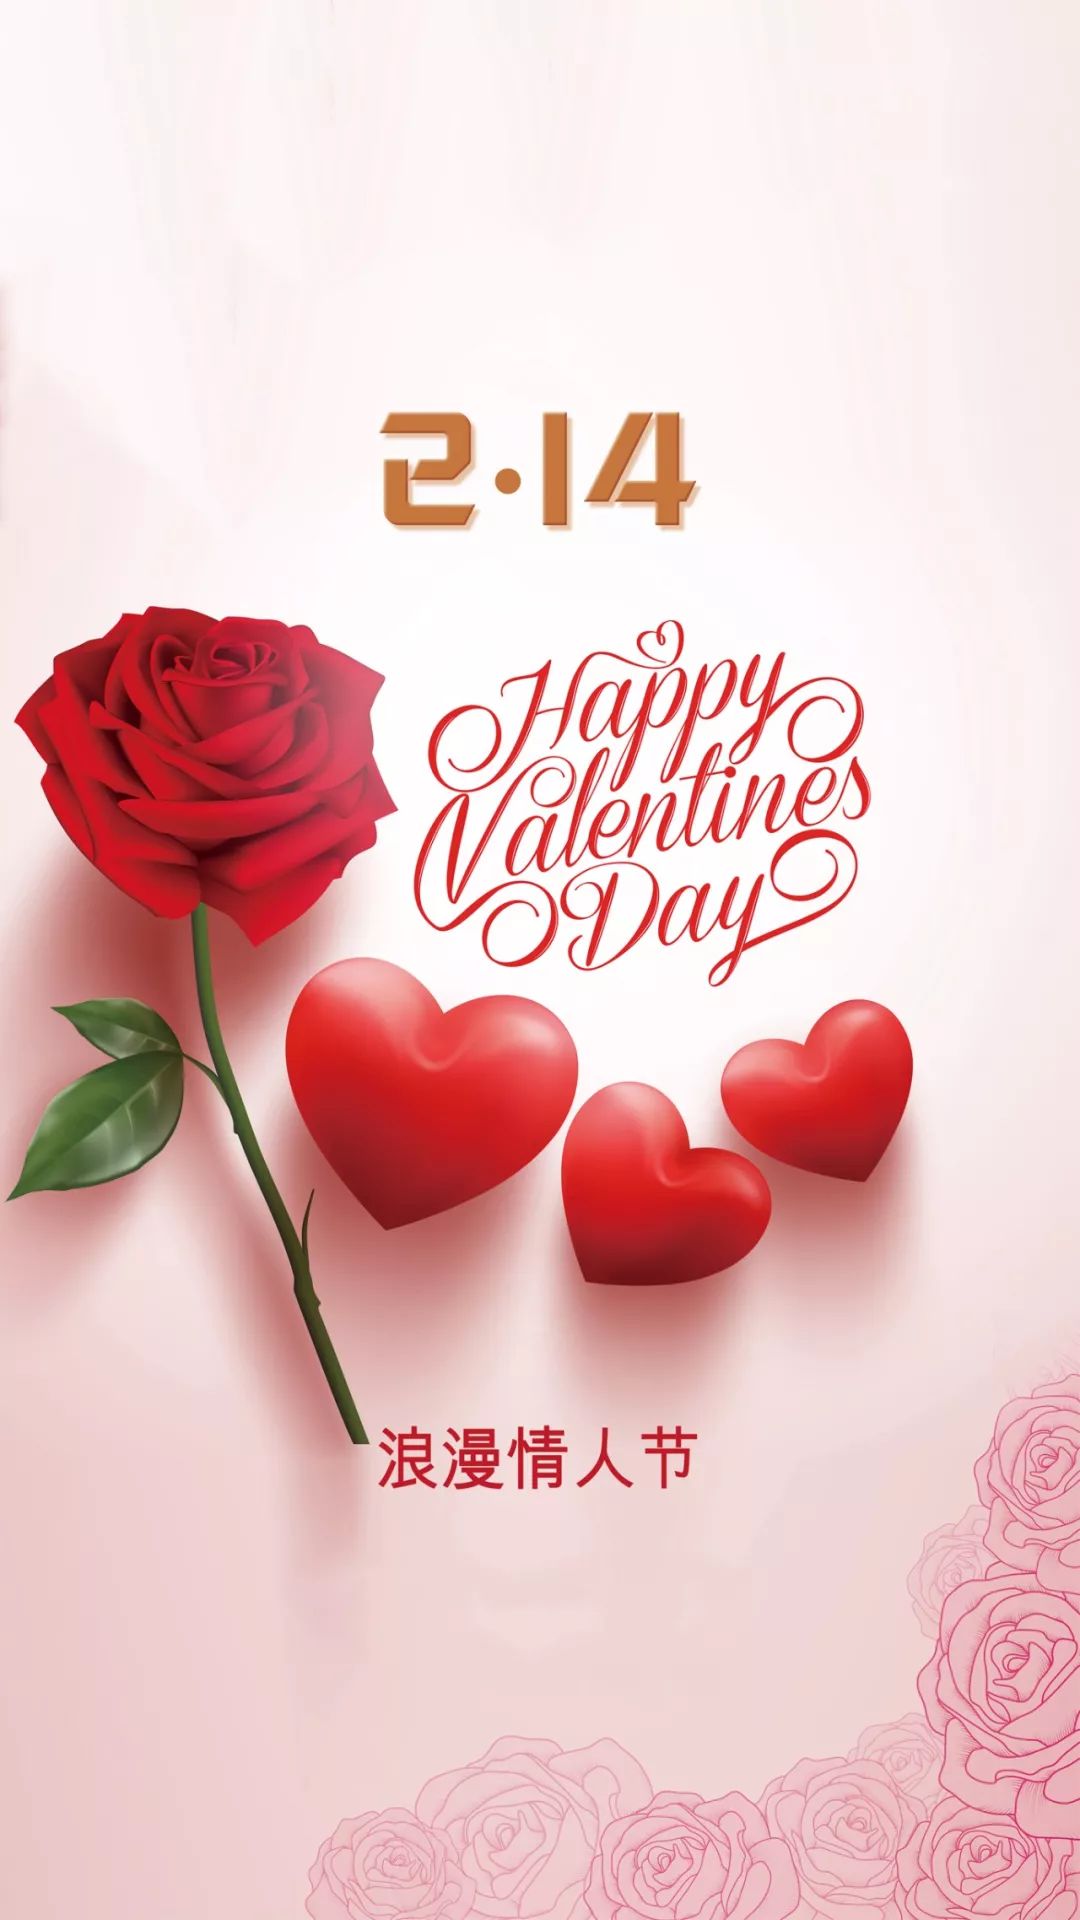 粉红色情人节祝福创意情人节节日分享中文微信朋友圈 - 模板 - Canva可画